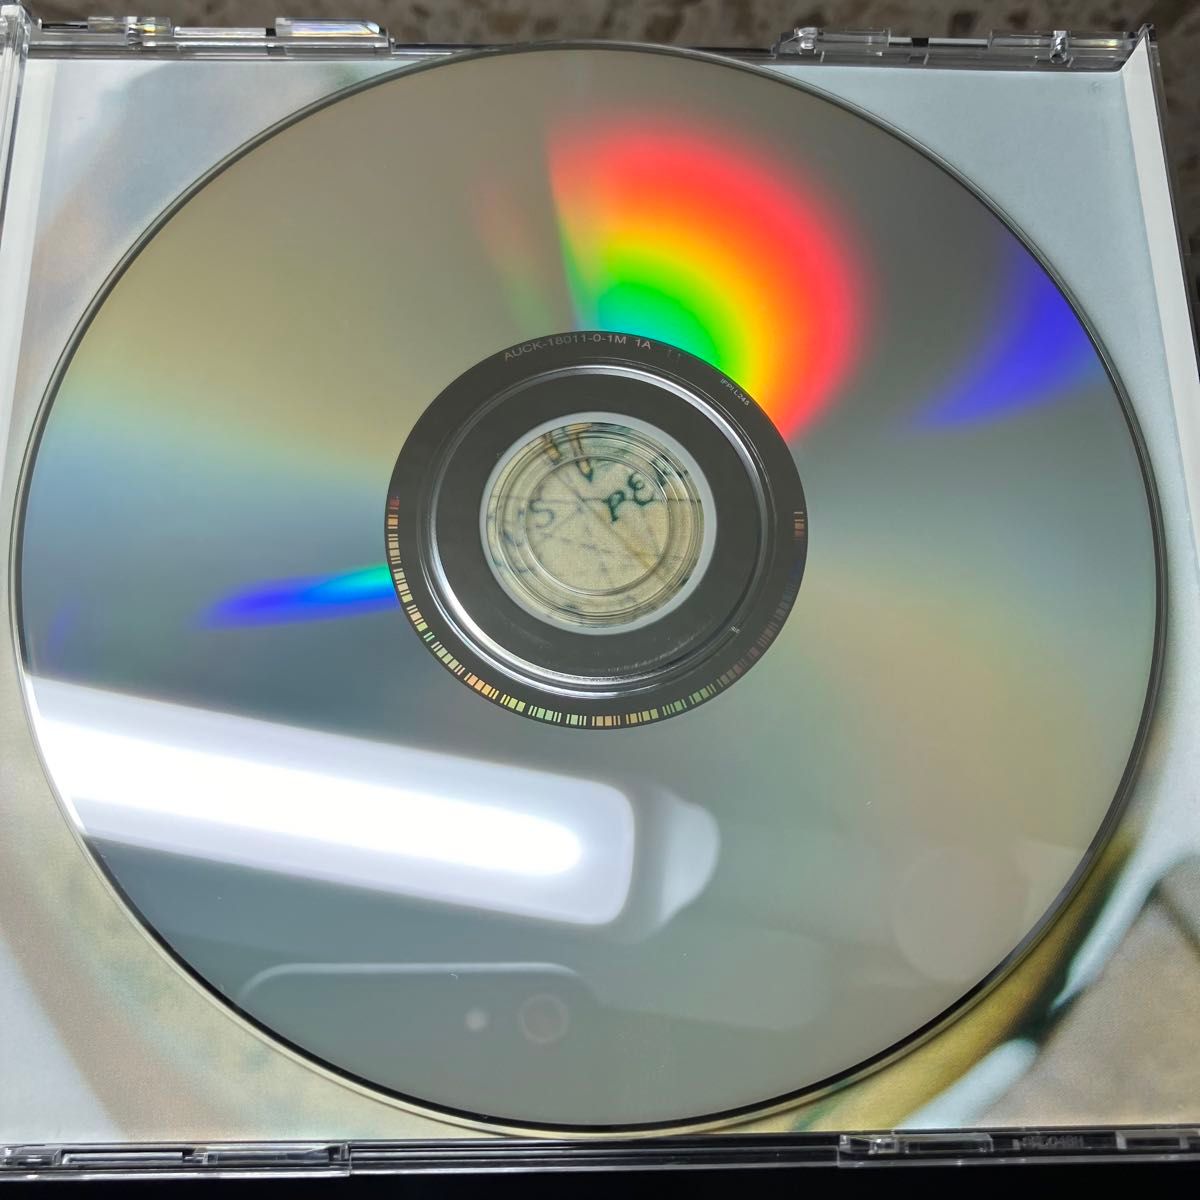 スガシカオ PARADE DVD付 初回限定盤 音楽CD 邦楽 J-POP